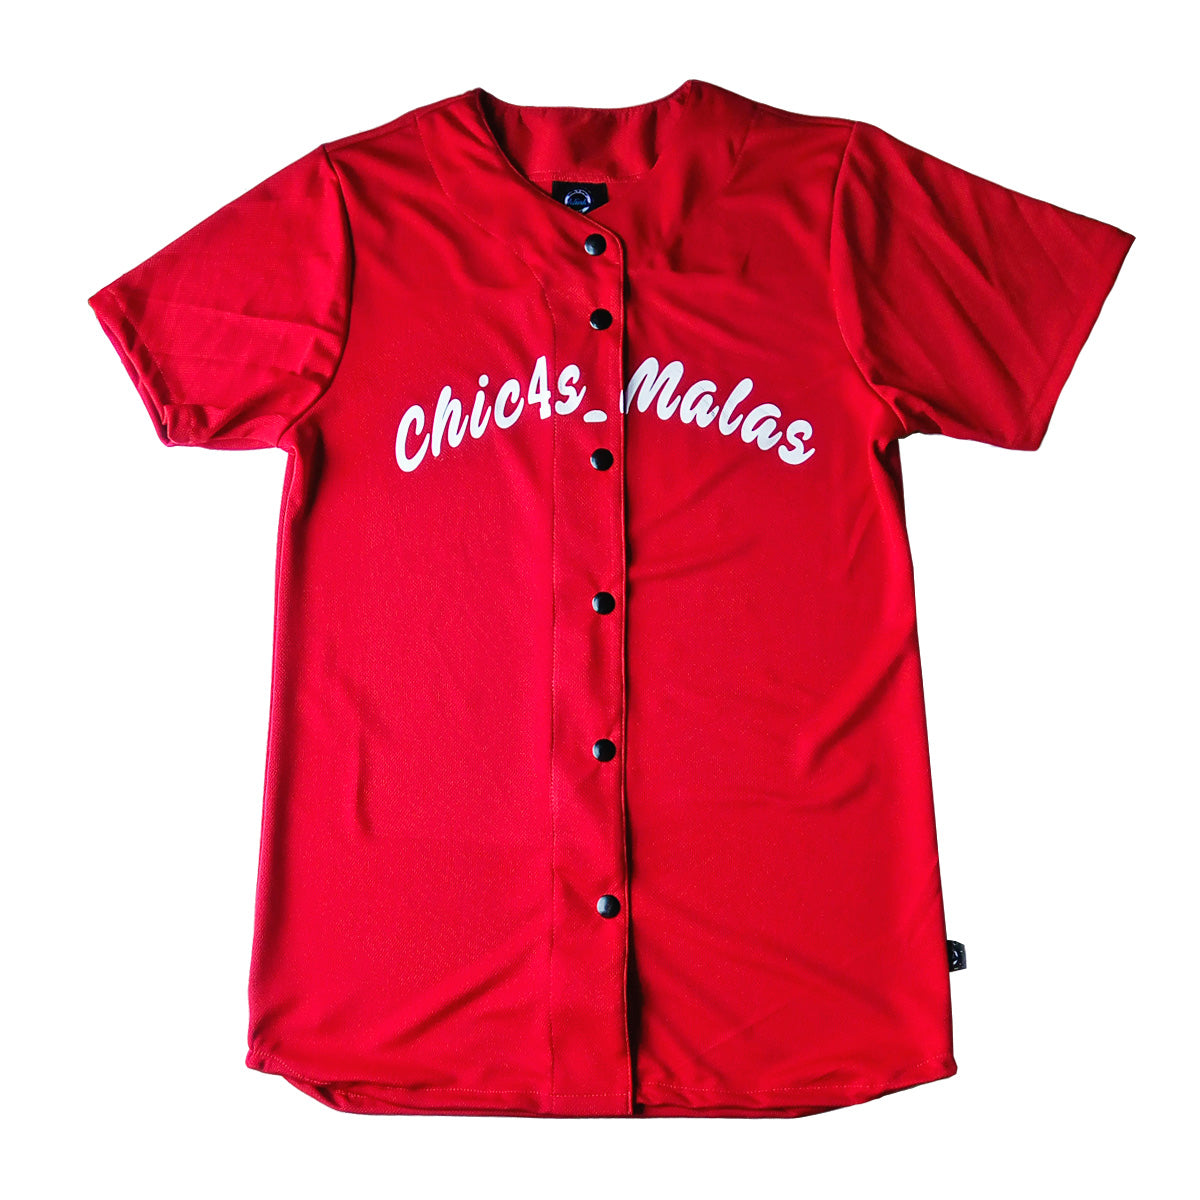 jersey camisola beisbol softbol personalizado rojo dama